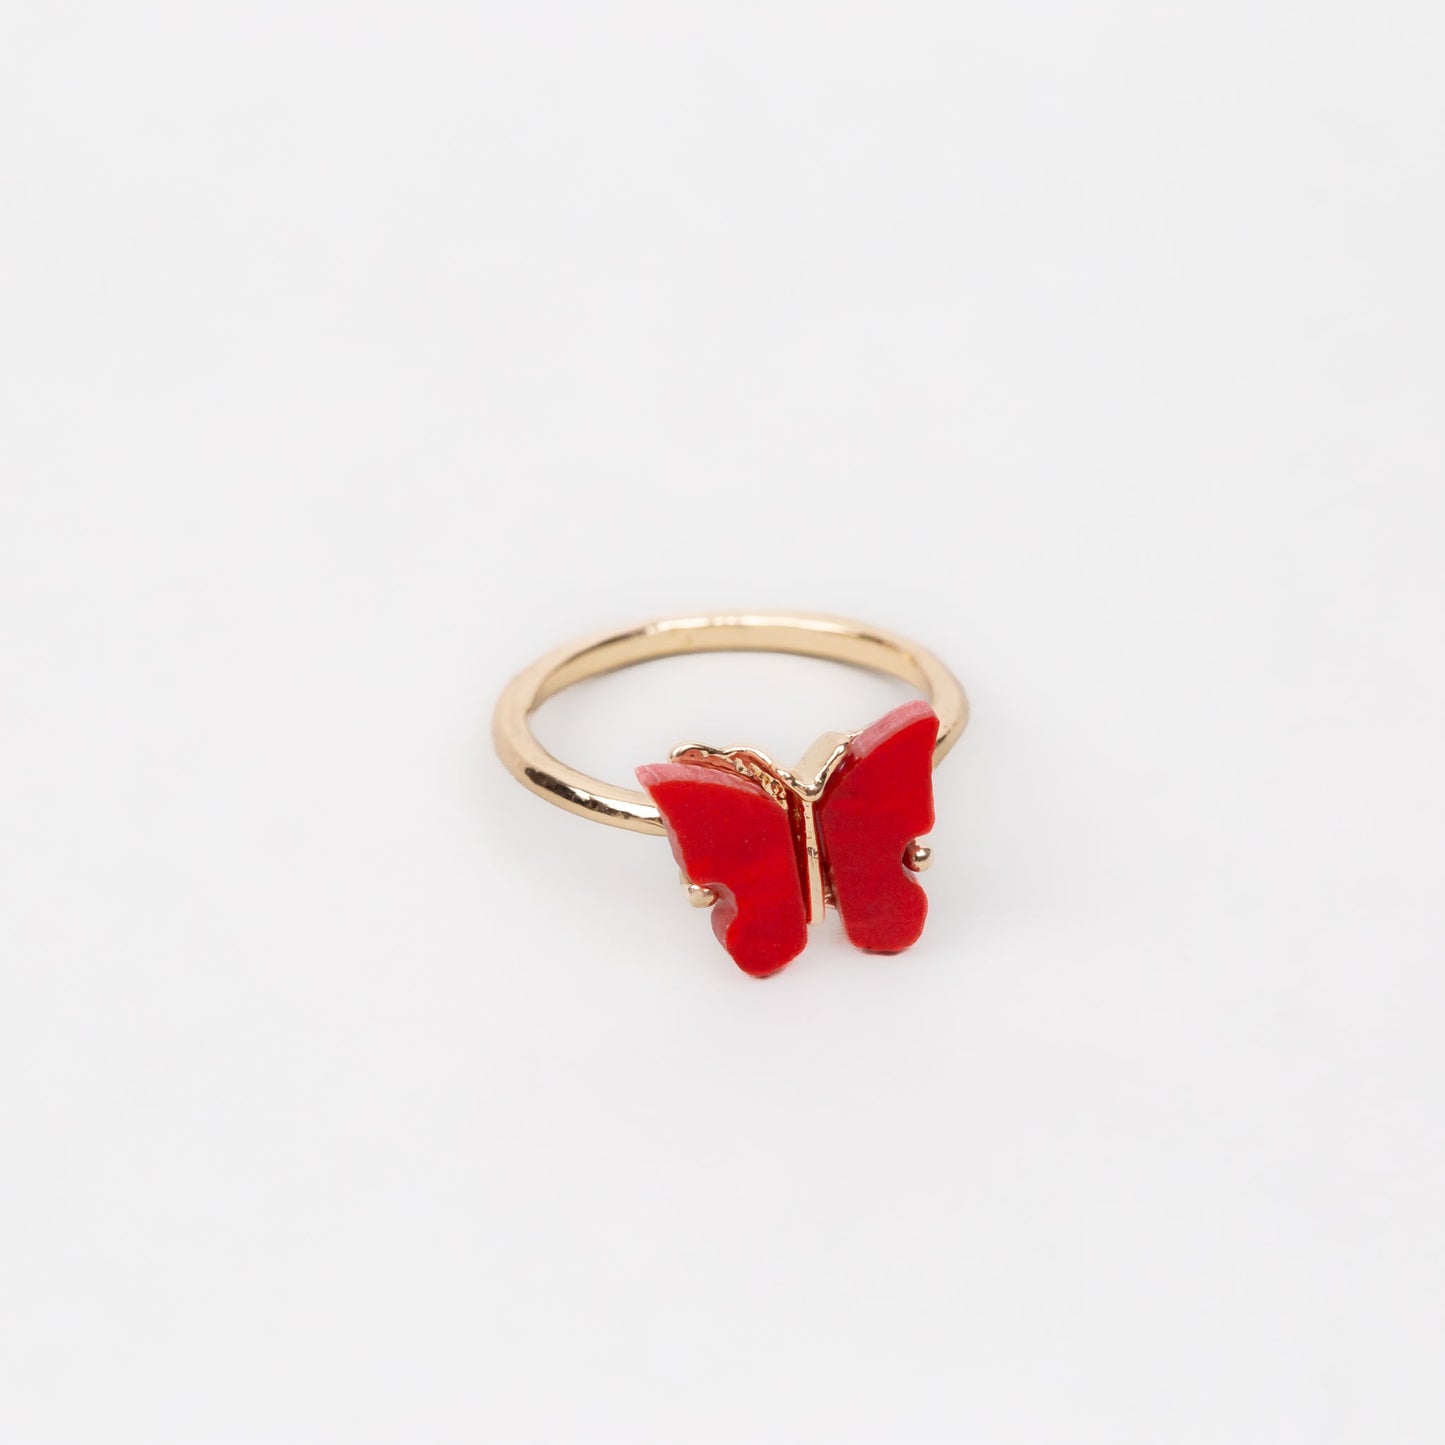 Inel auriu cu pietre sidefate în formă de fluture - Roșu